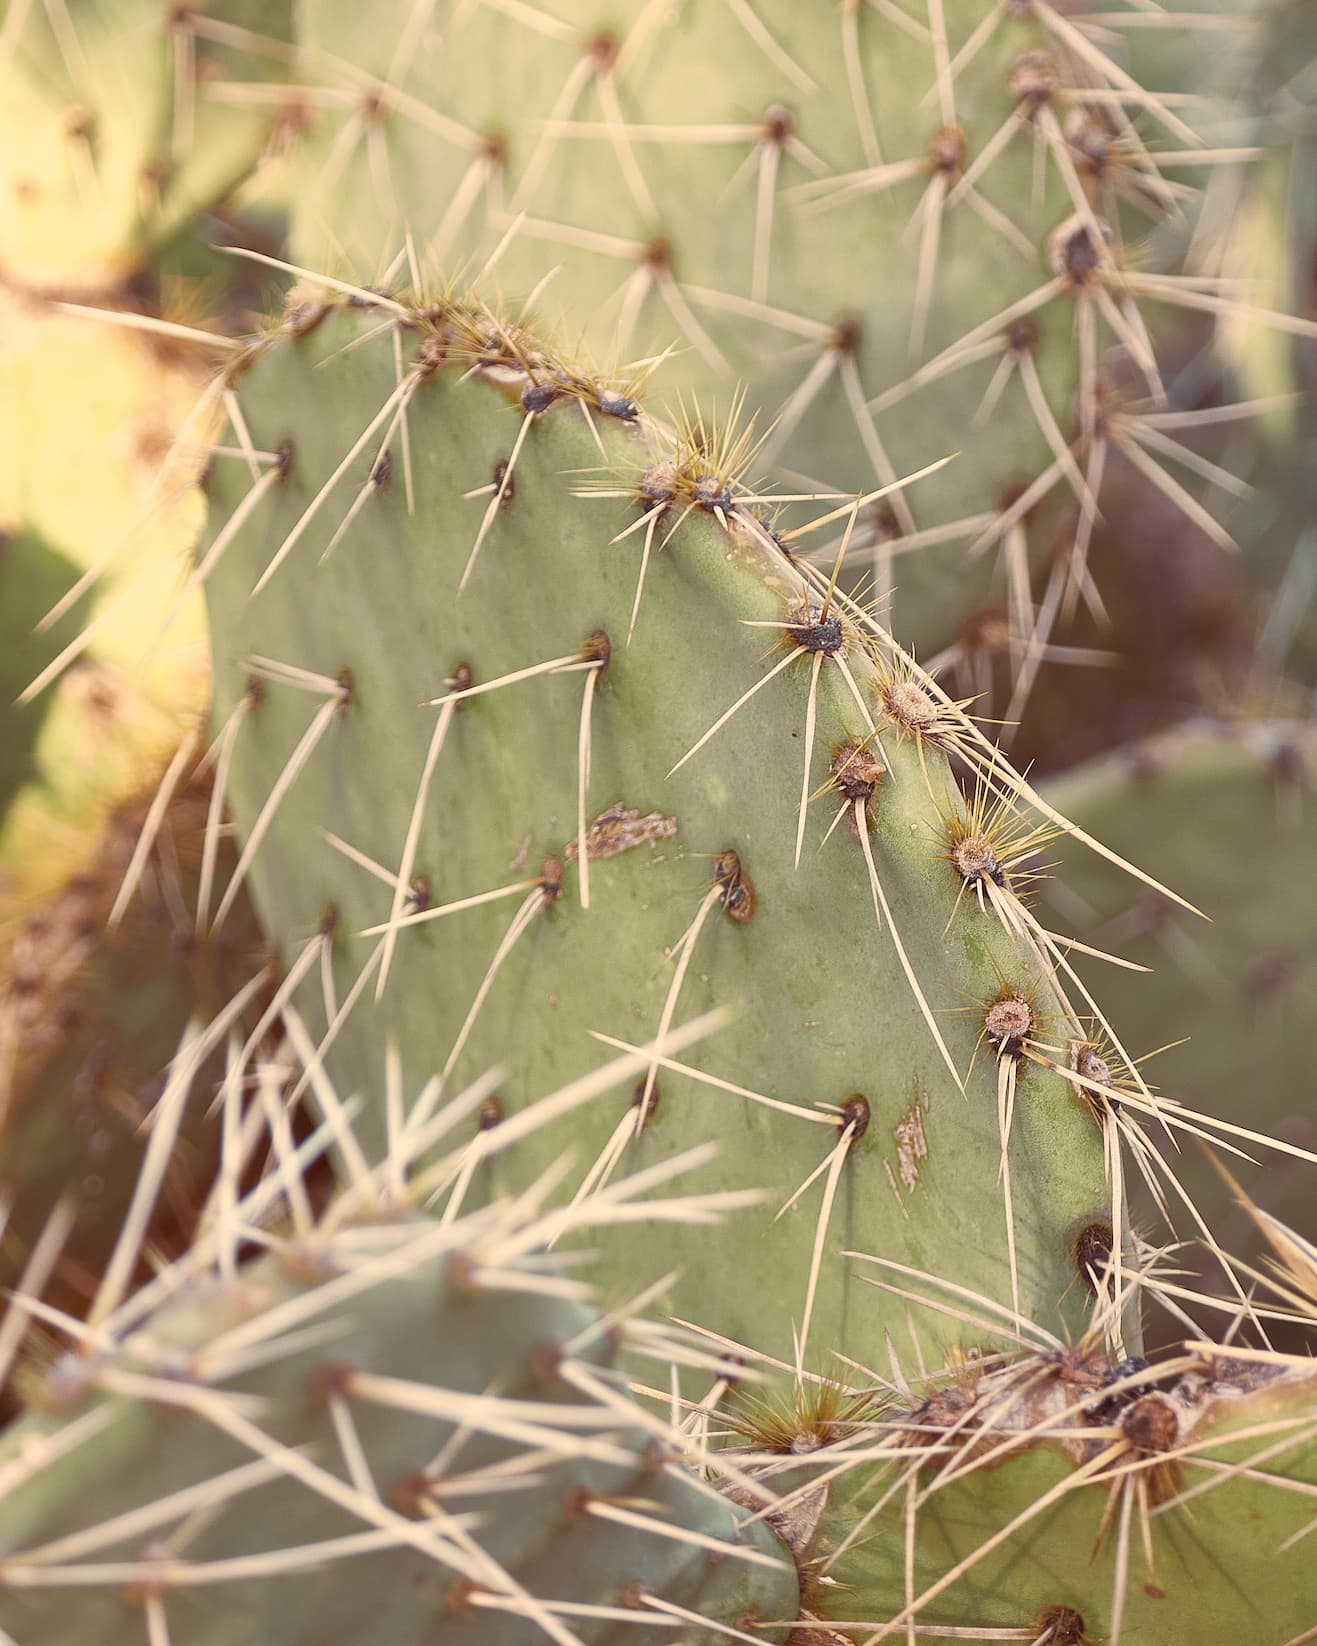 Close up photograph of a cactus